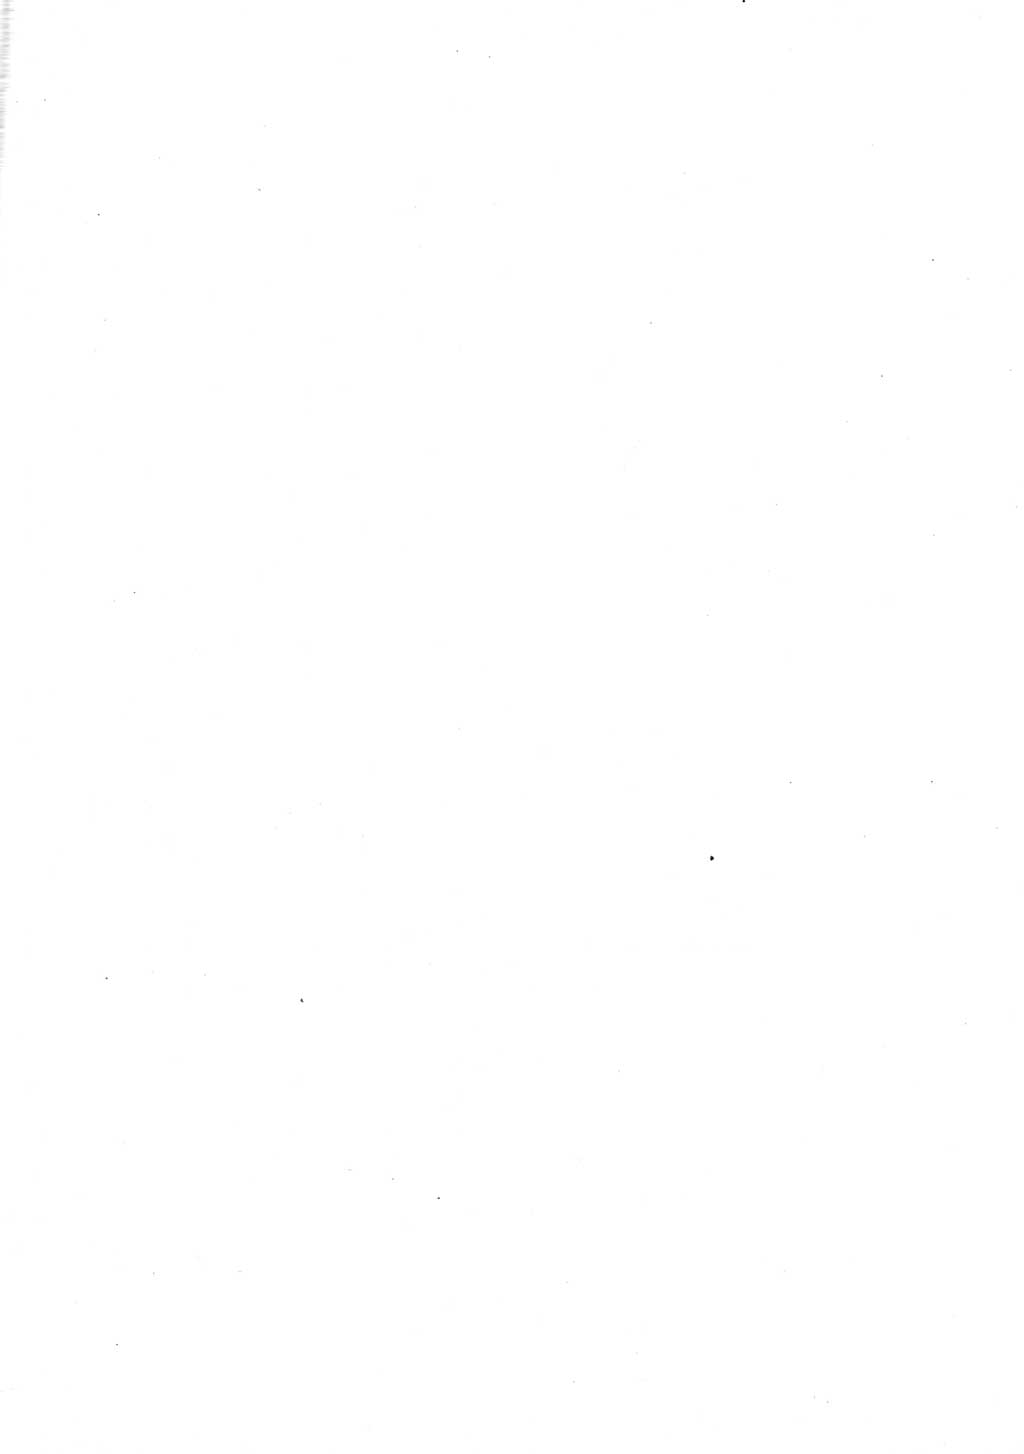 Strafgesetzbuch (StGB) der Deutschen Demokratischen Republik (DDR) und angrenzende Gesetze und Bestimmungen 1977, Seite 4 (StGB DDR Ges. Best. 1977, S. 4)